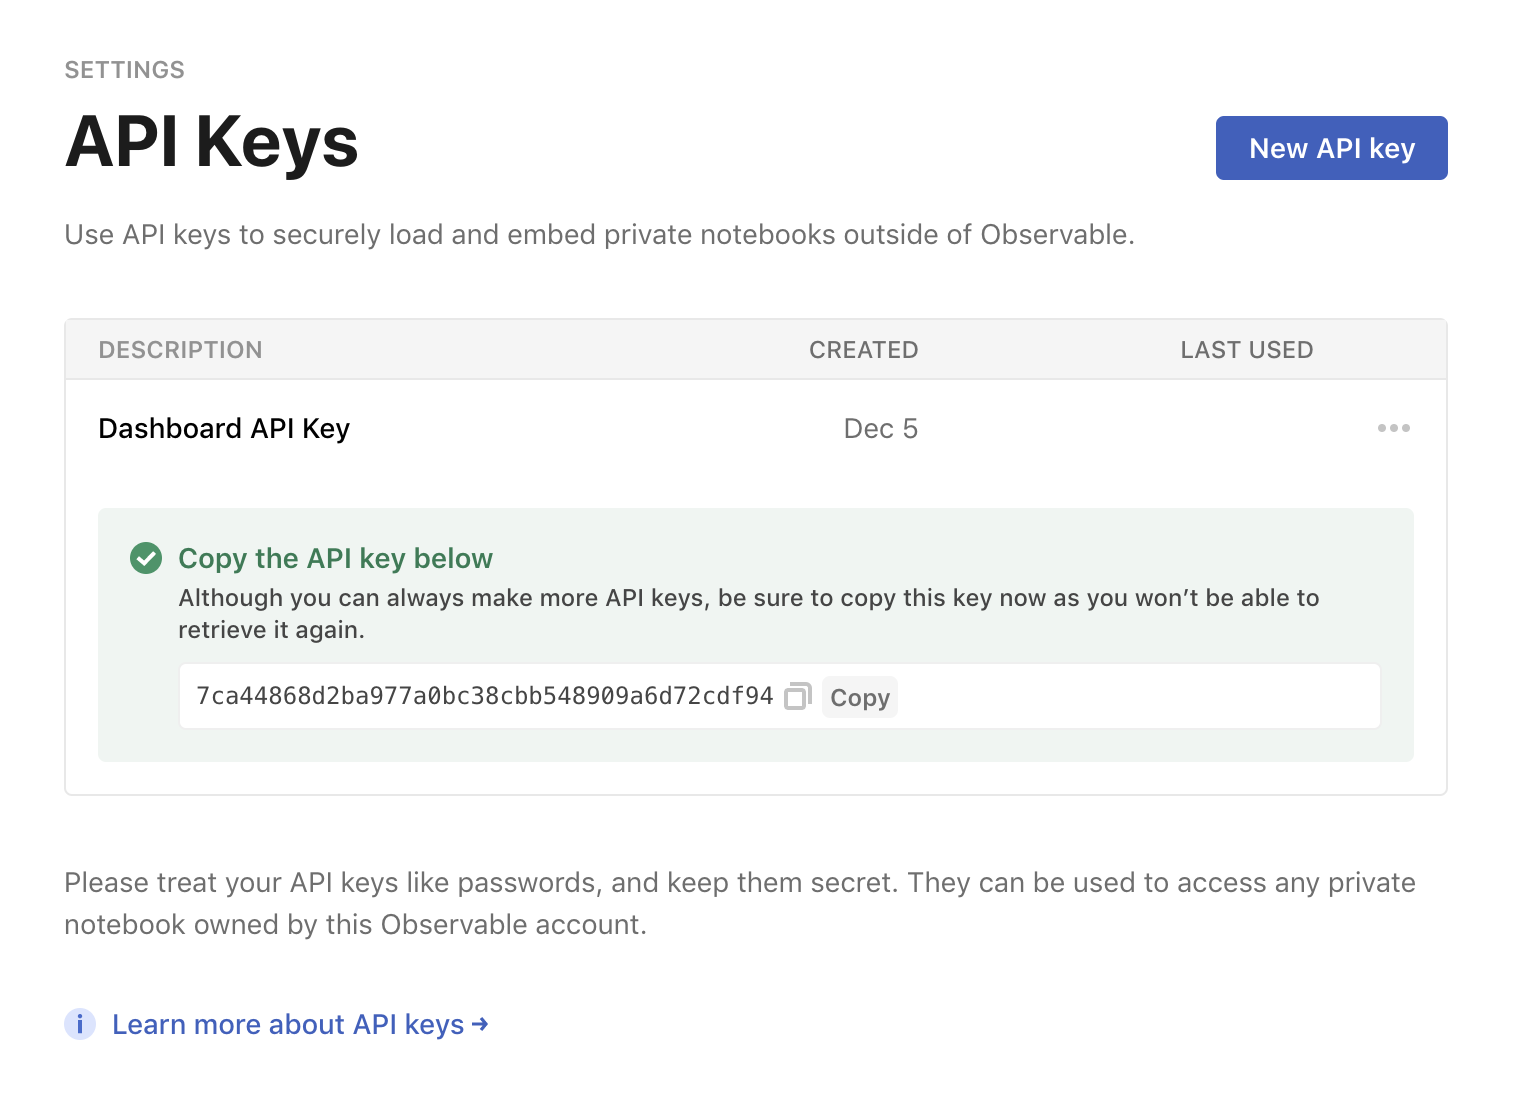 The API keys section of user settings